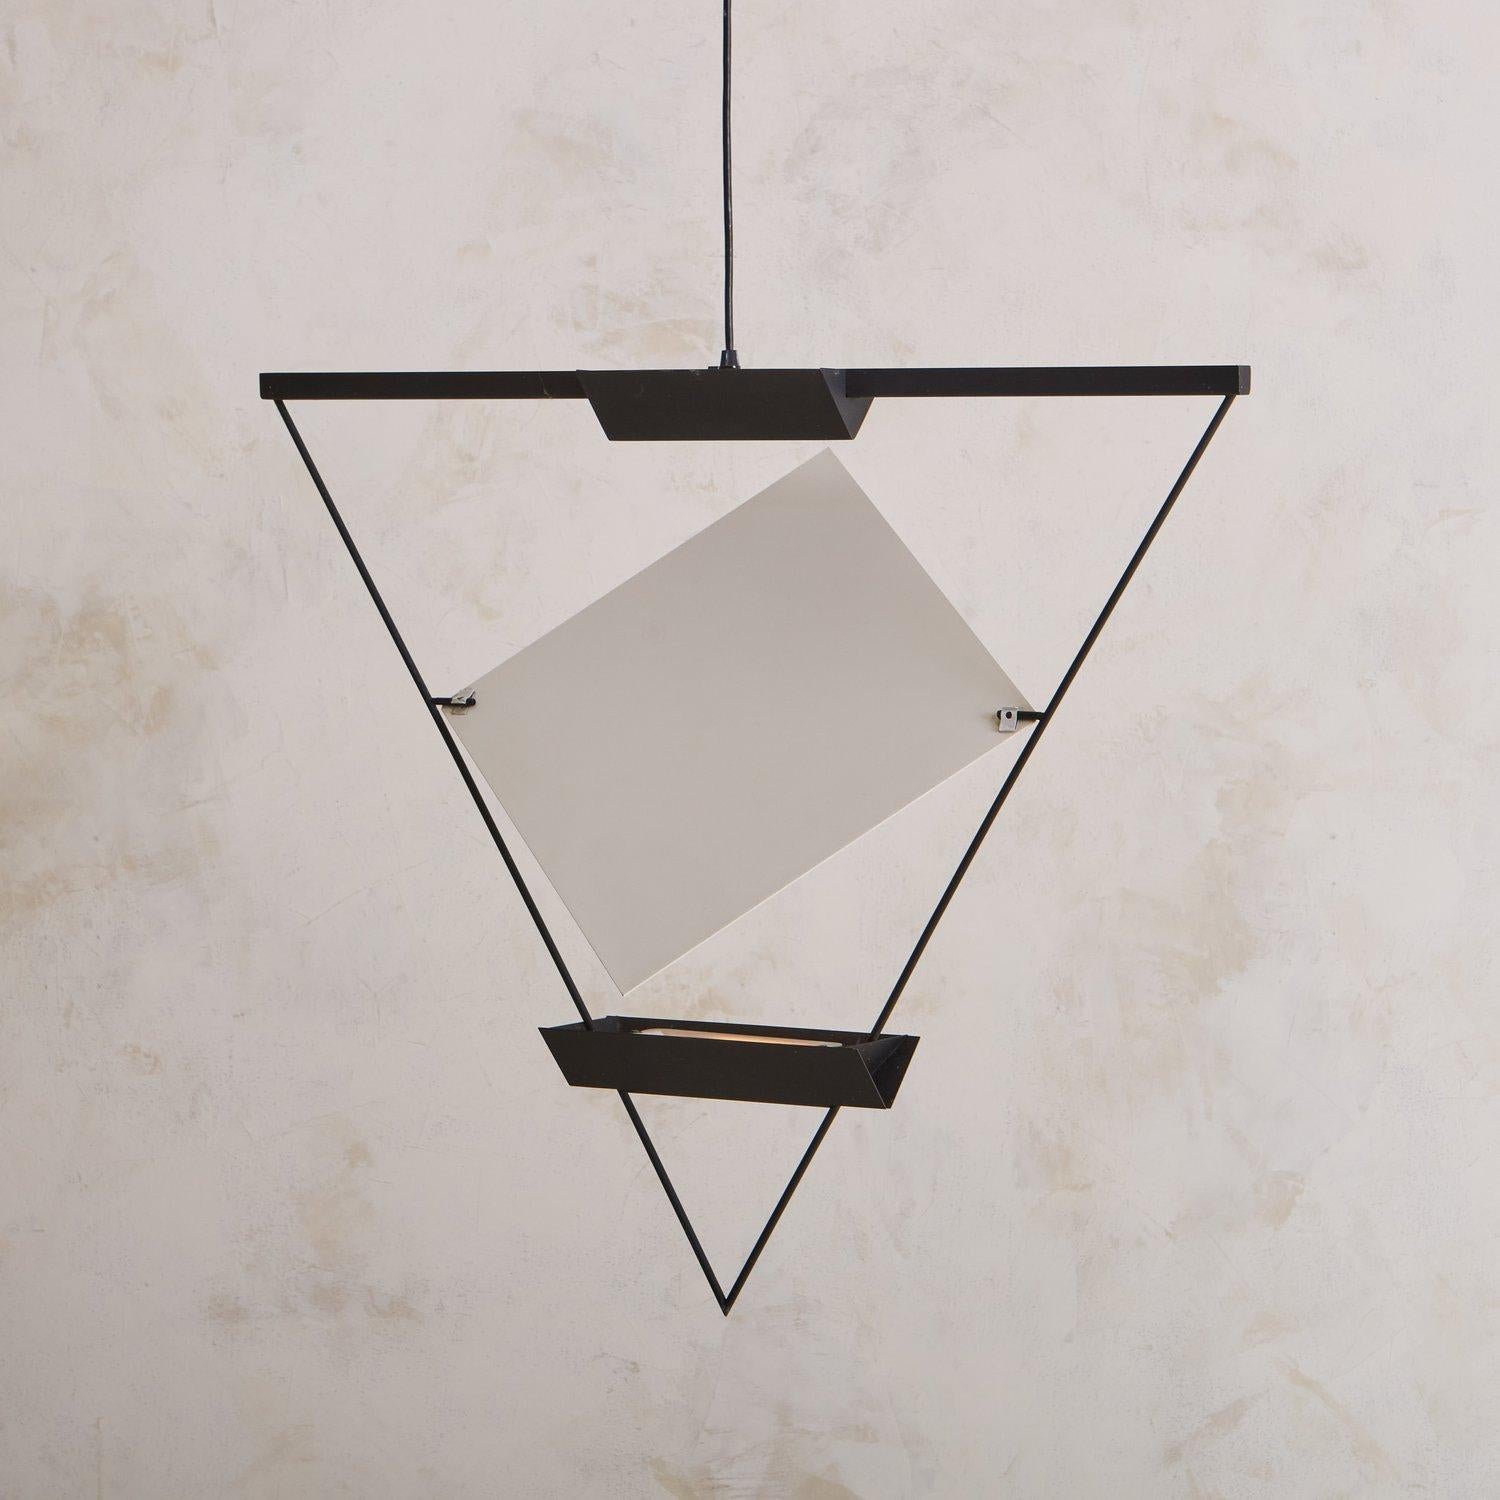 Conçue par l'architecte suisse Mario Botta (né en 1943) pour Artemide dans les années 1980, cette lampe suspendue triangulaire possède un cadre en métal émaillé noir qui abrite deux ampoules halogènes. Un panneau blanc réglable en forme de diamant